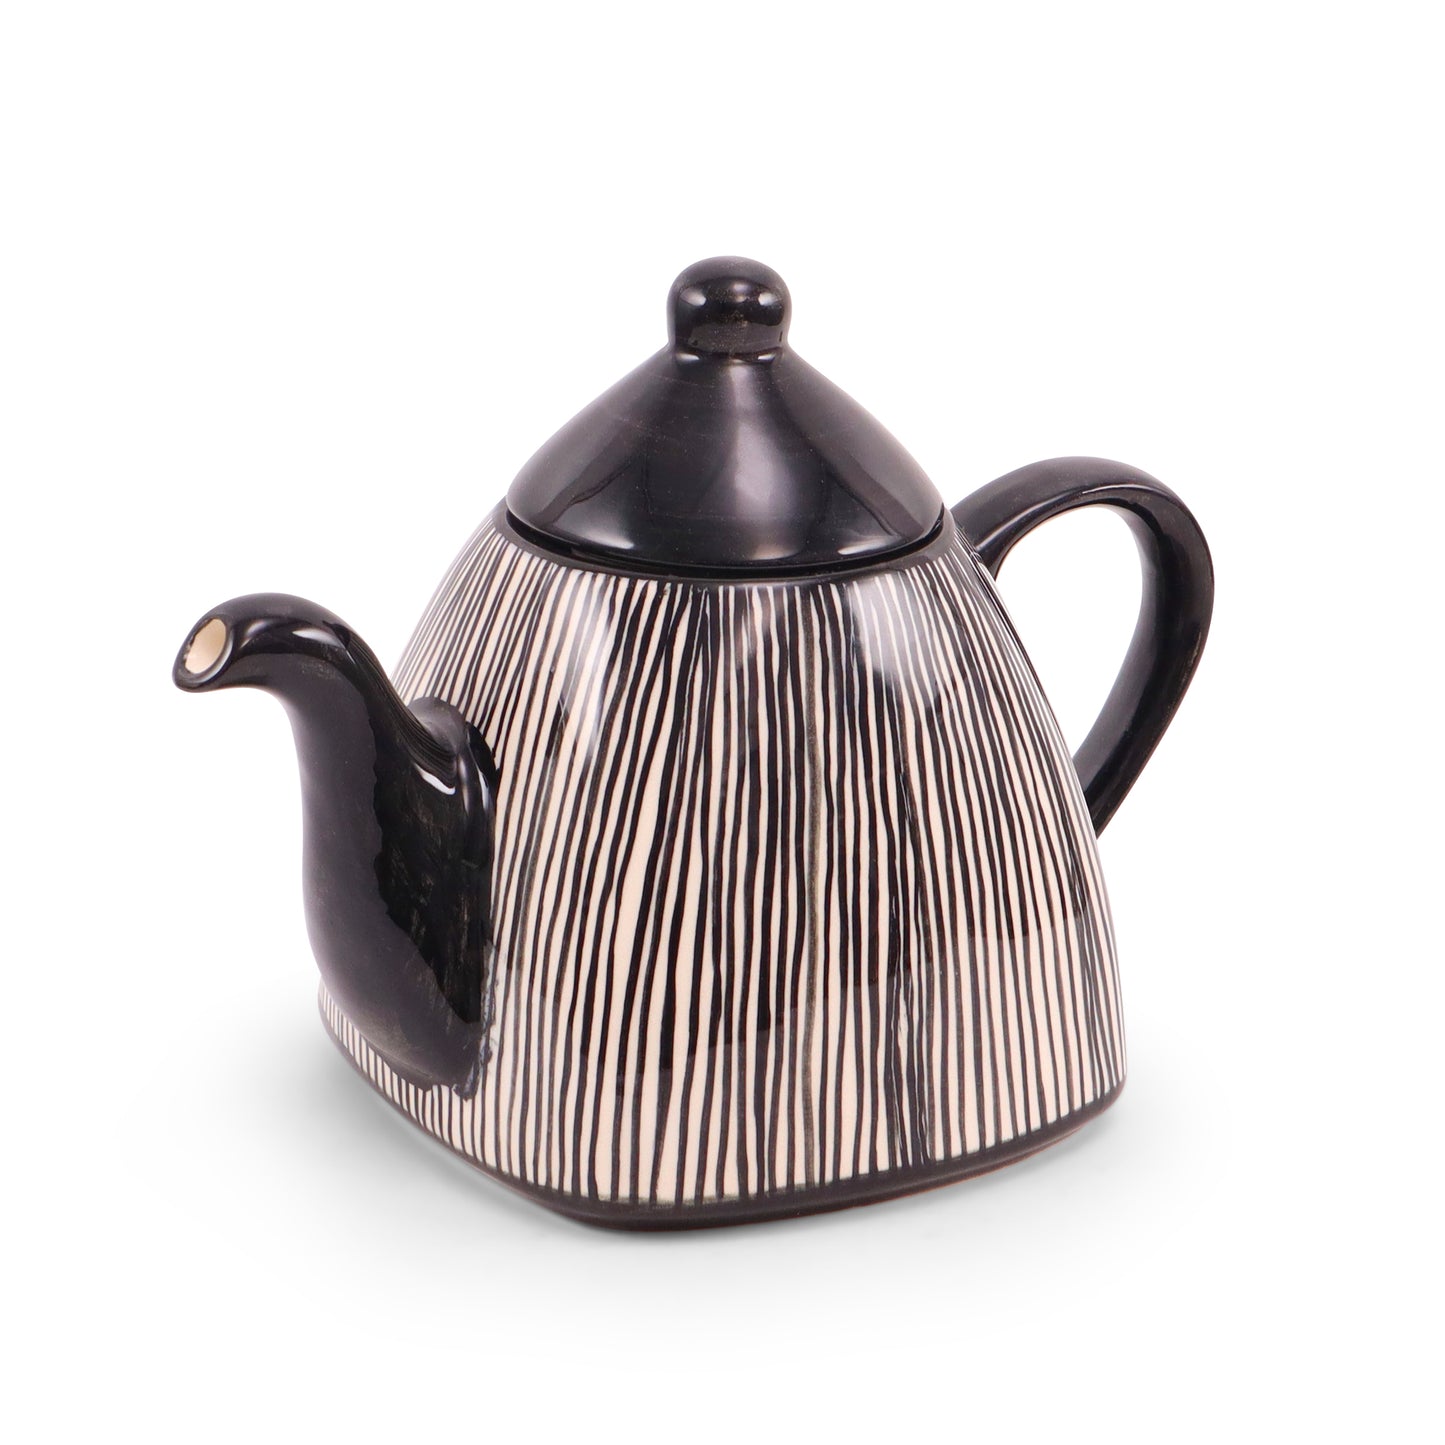 40oz Square Teapot. Pattern: Pinstripe